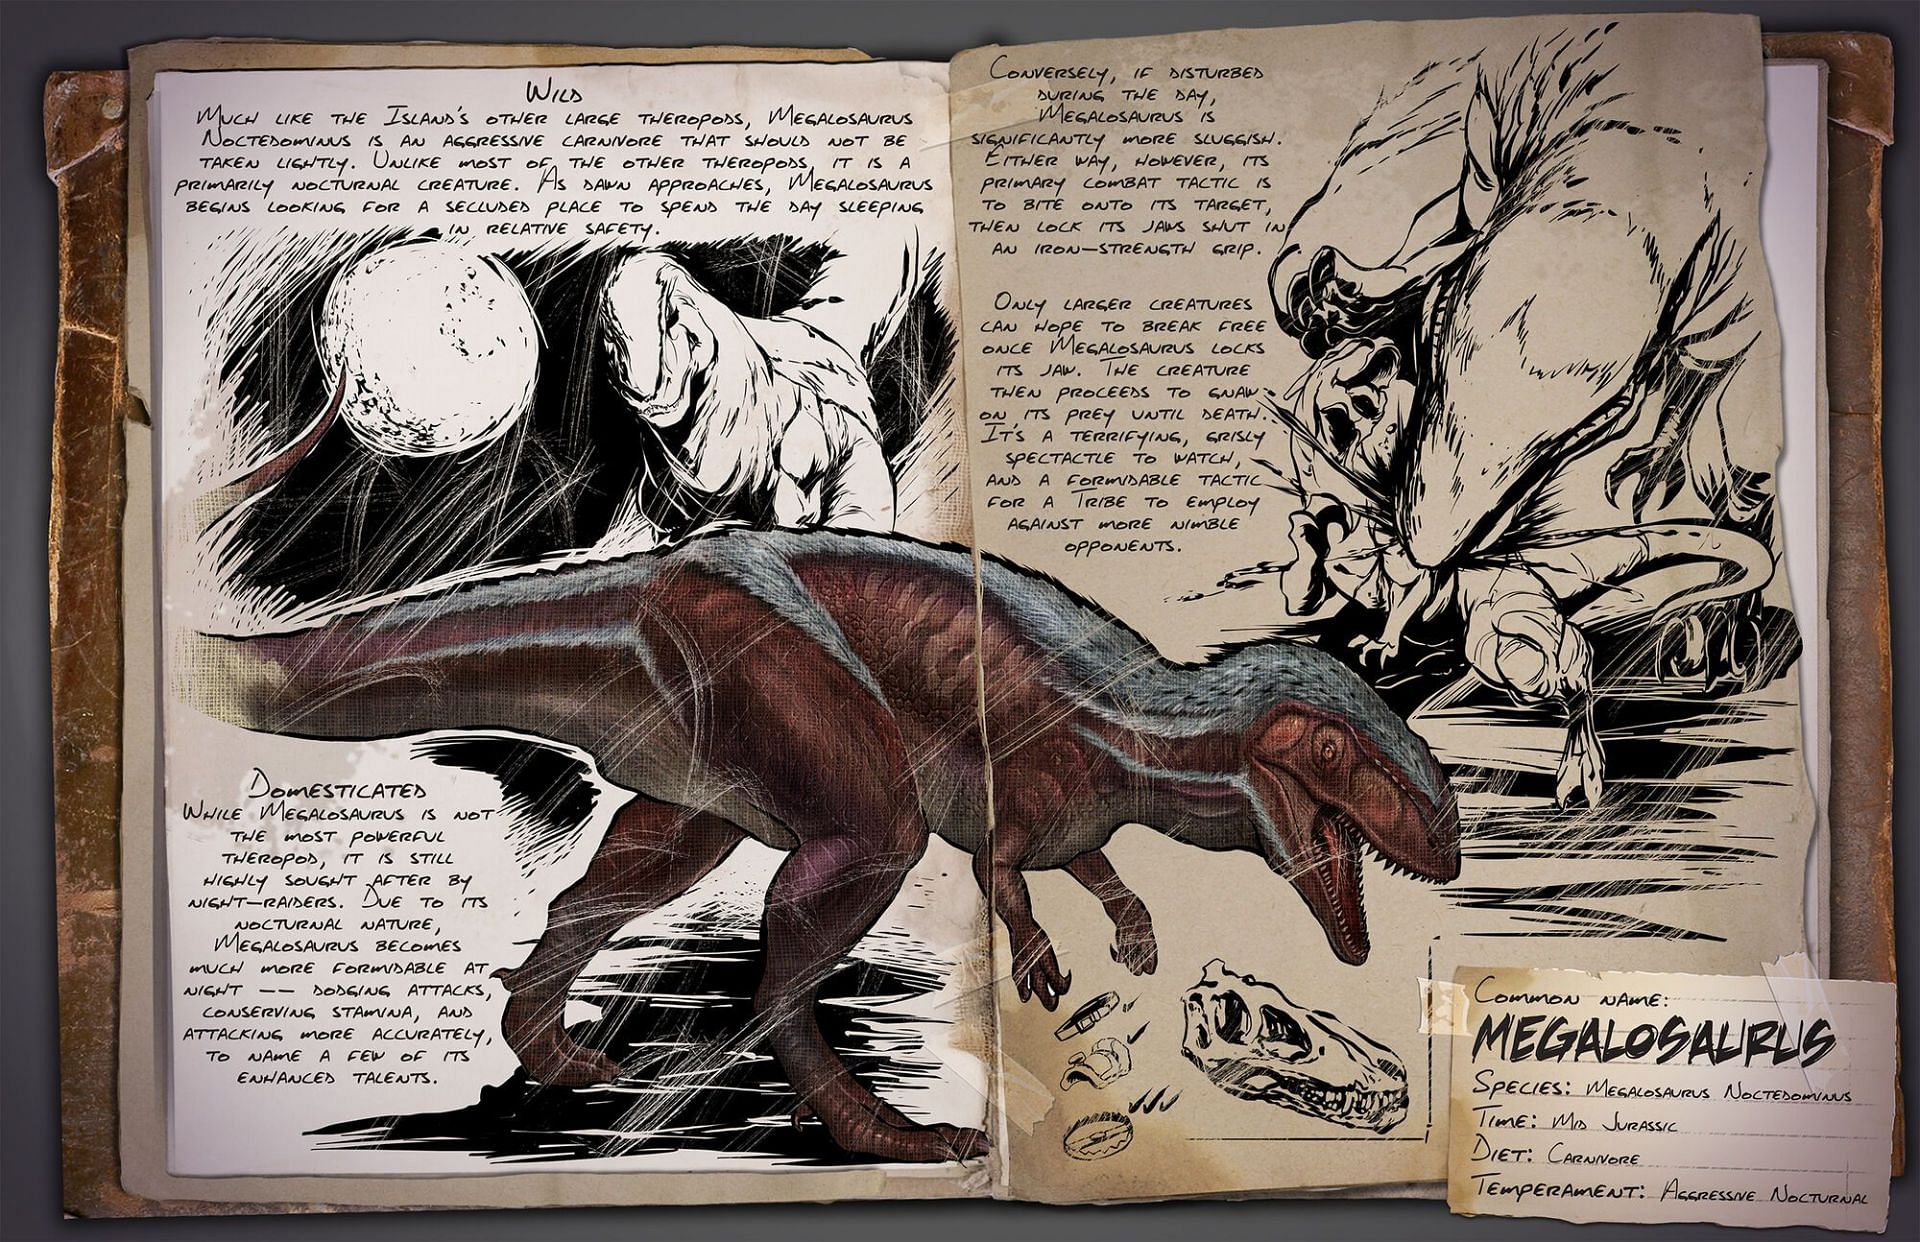 Megalosaurus, Ark: Lost Island (Image via ARK fandom)